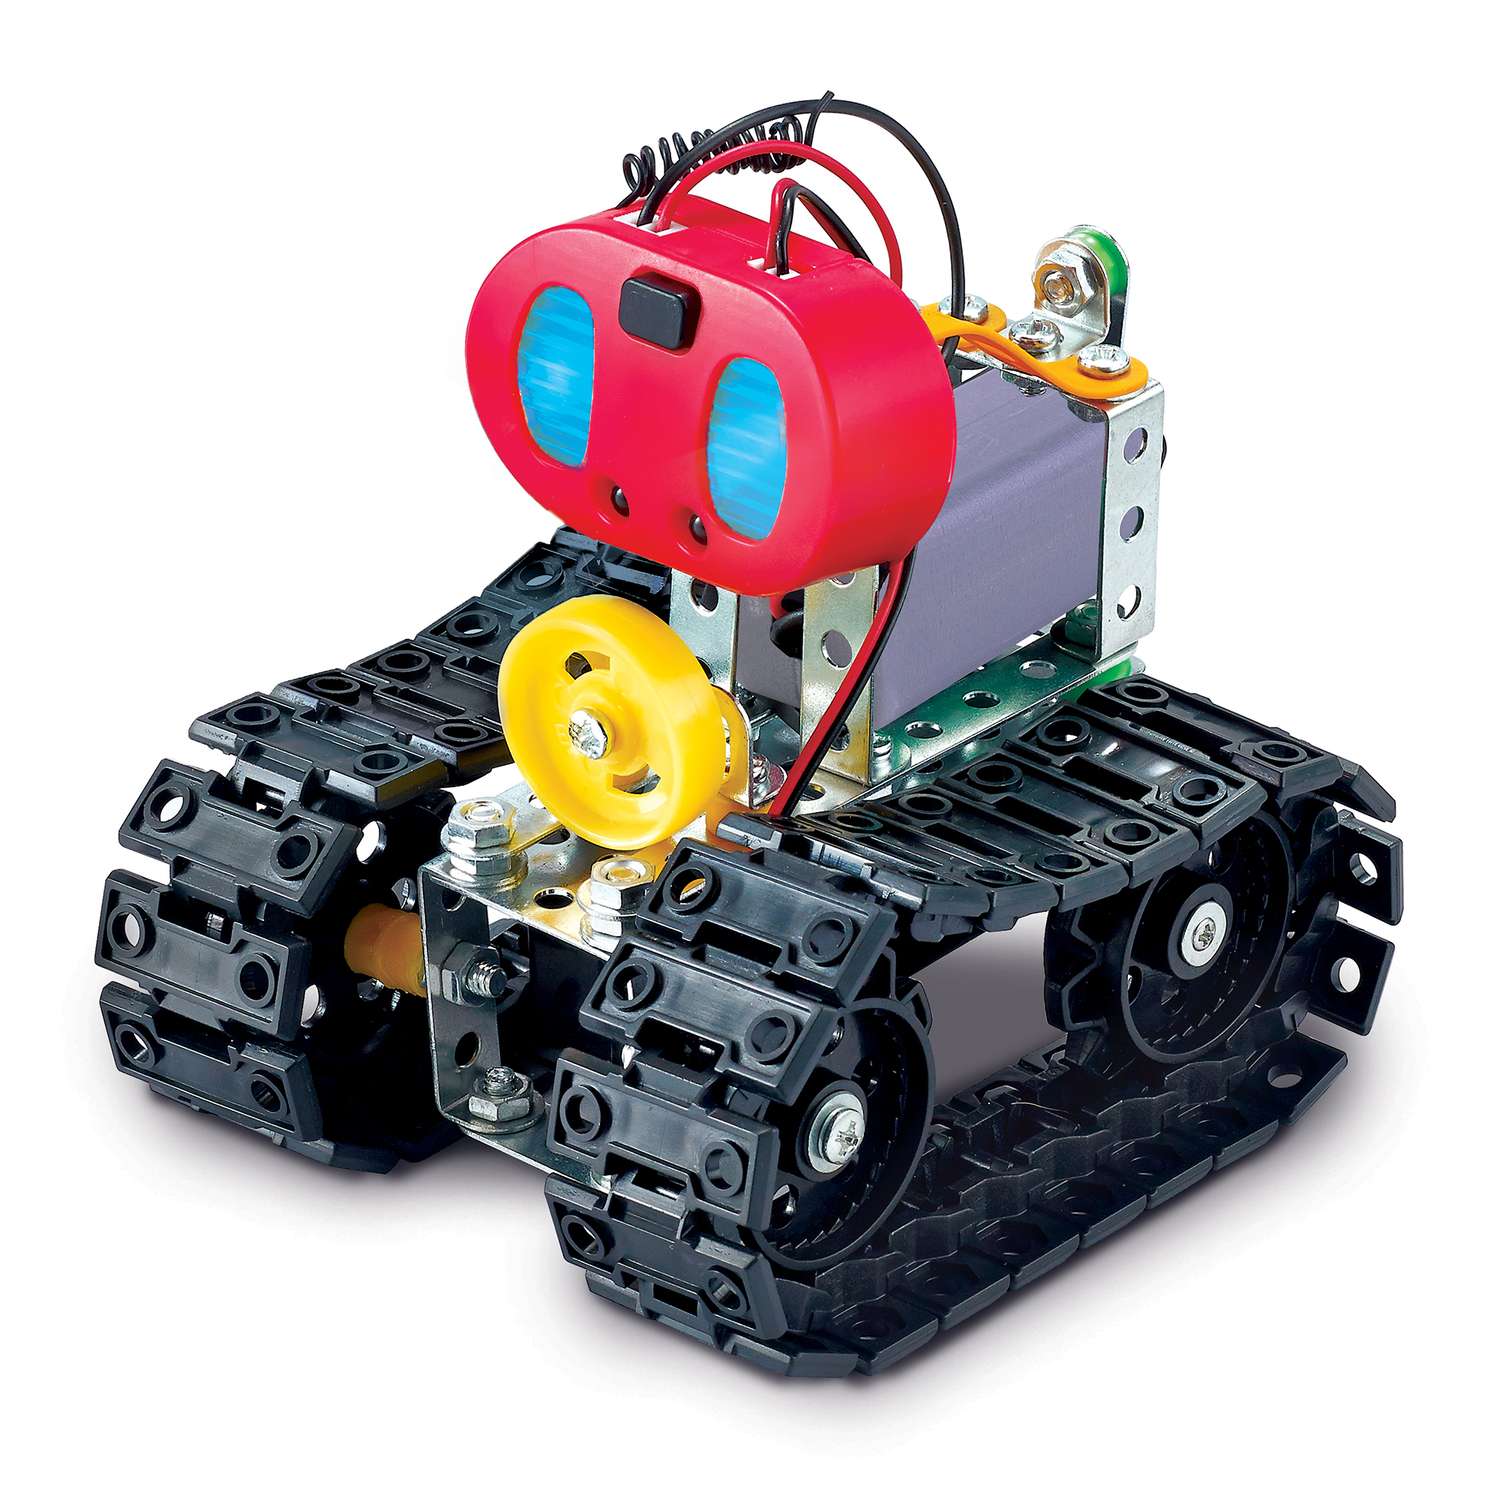 Конструктор ON TIME Роботехника Радиоуправляемый робот на гусеничном ходу - фото 2